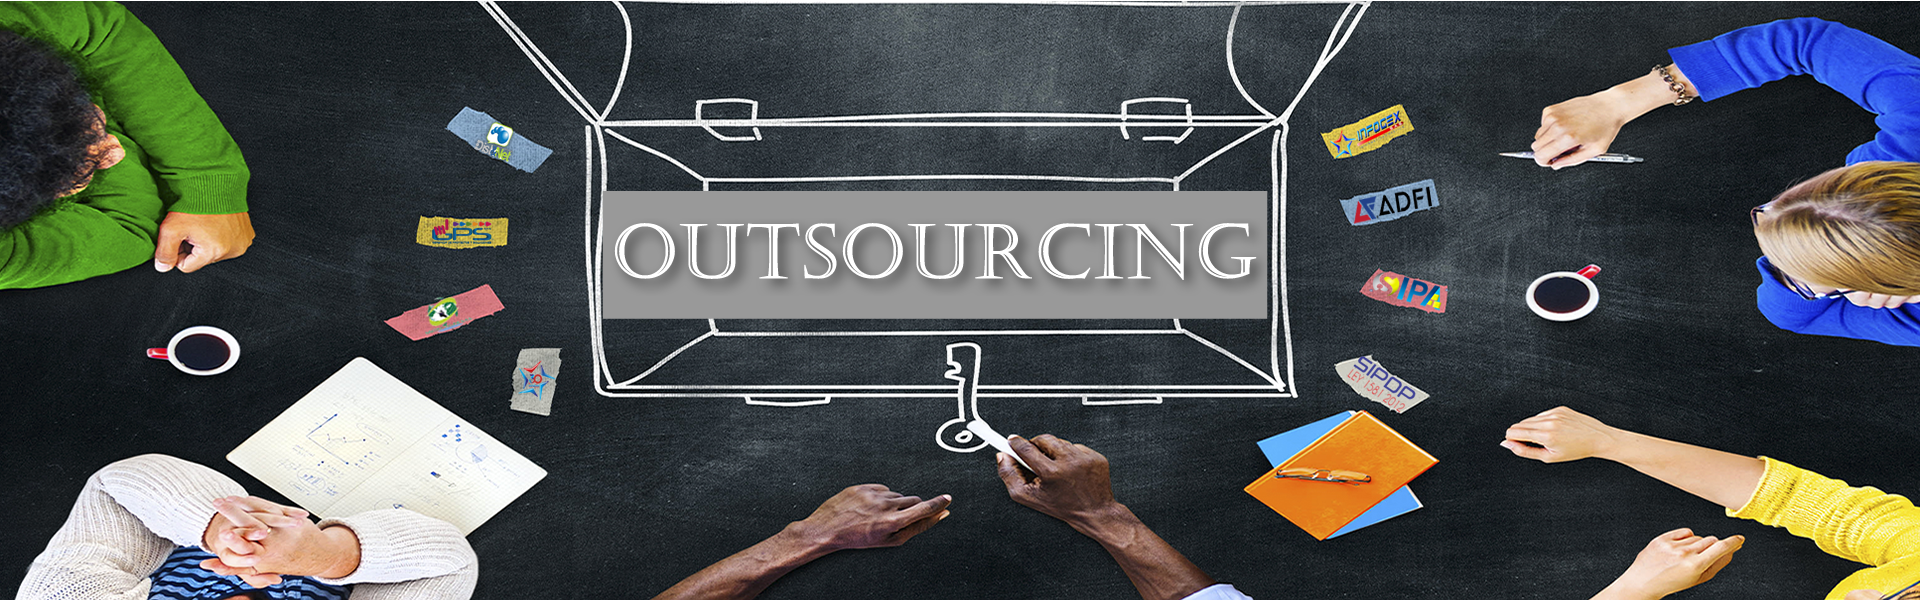 Servicio de Outsourcing